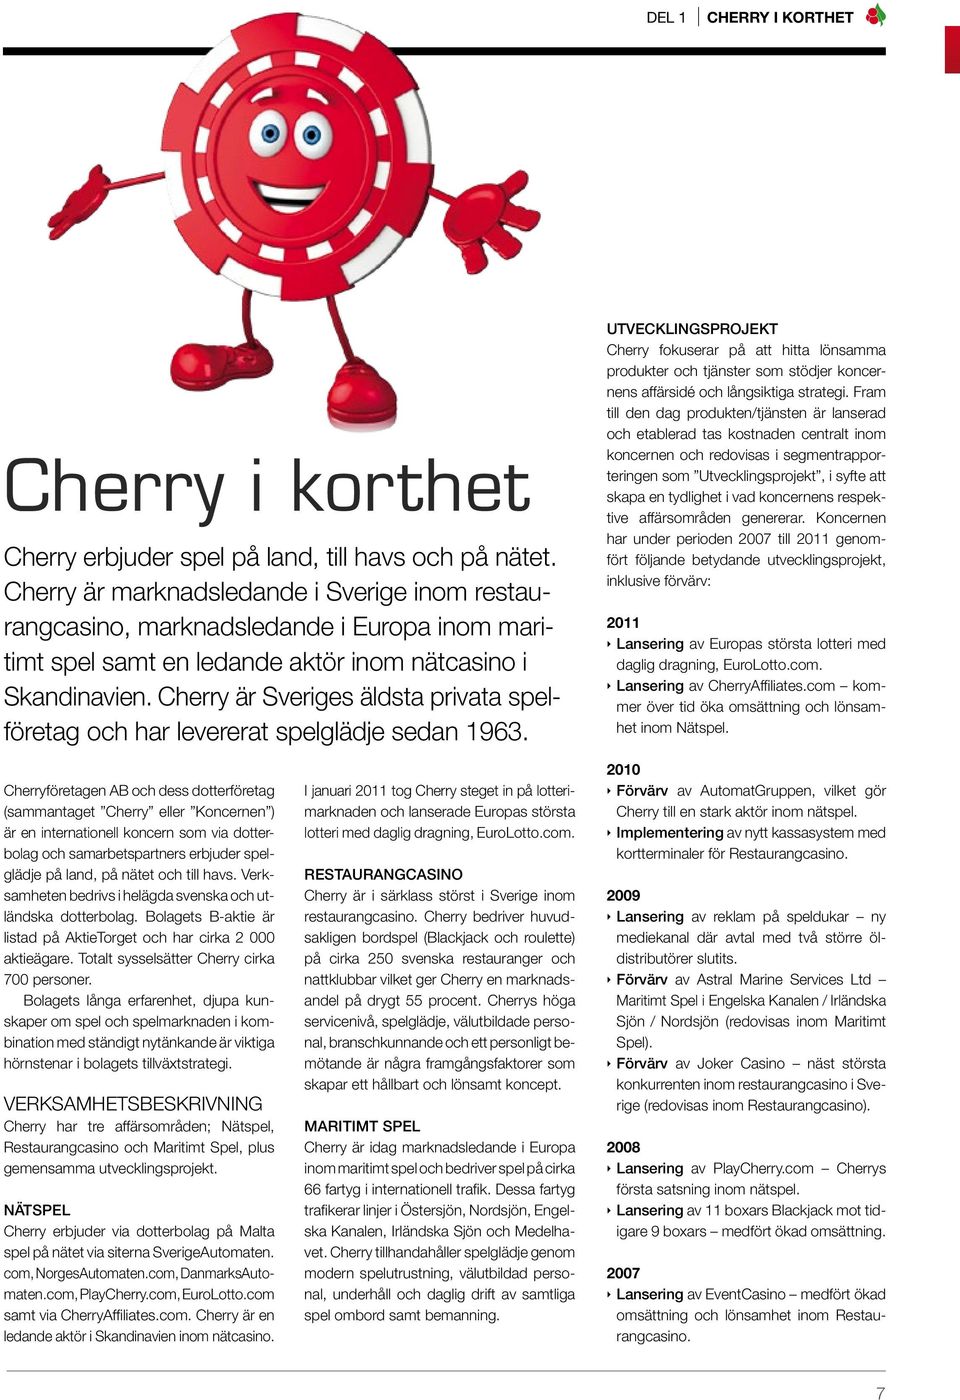 Cherry är Sveriges äldsta privata spelföretag och har levererat spelglädje sedan 1963.